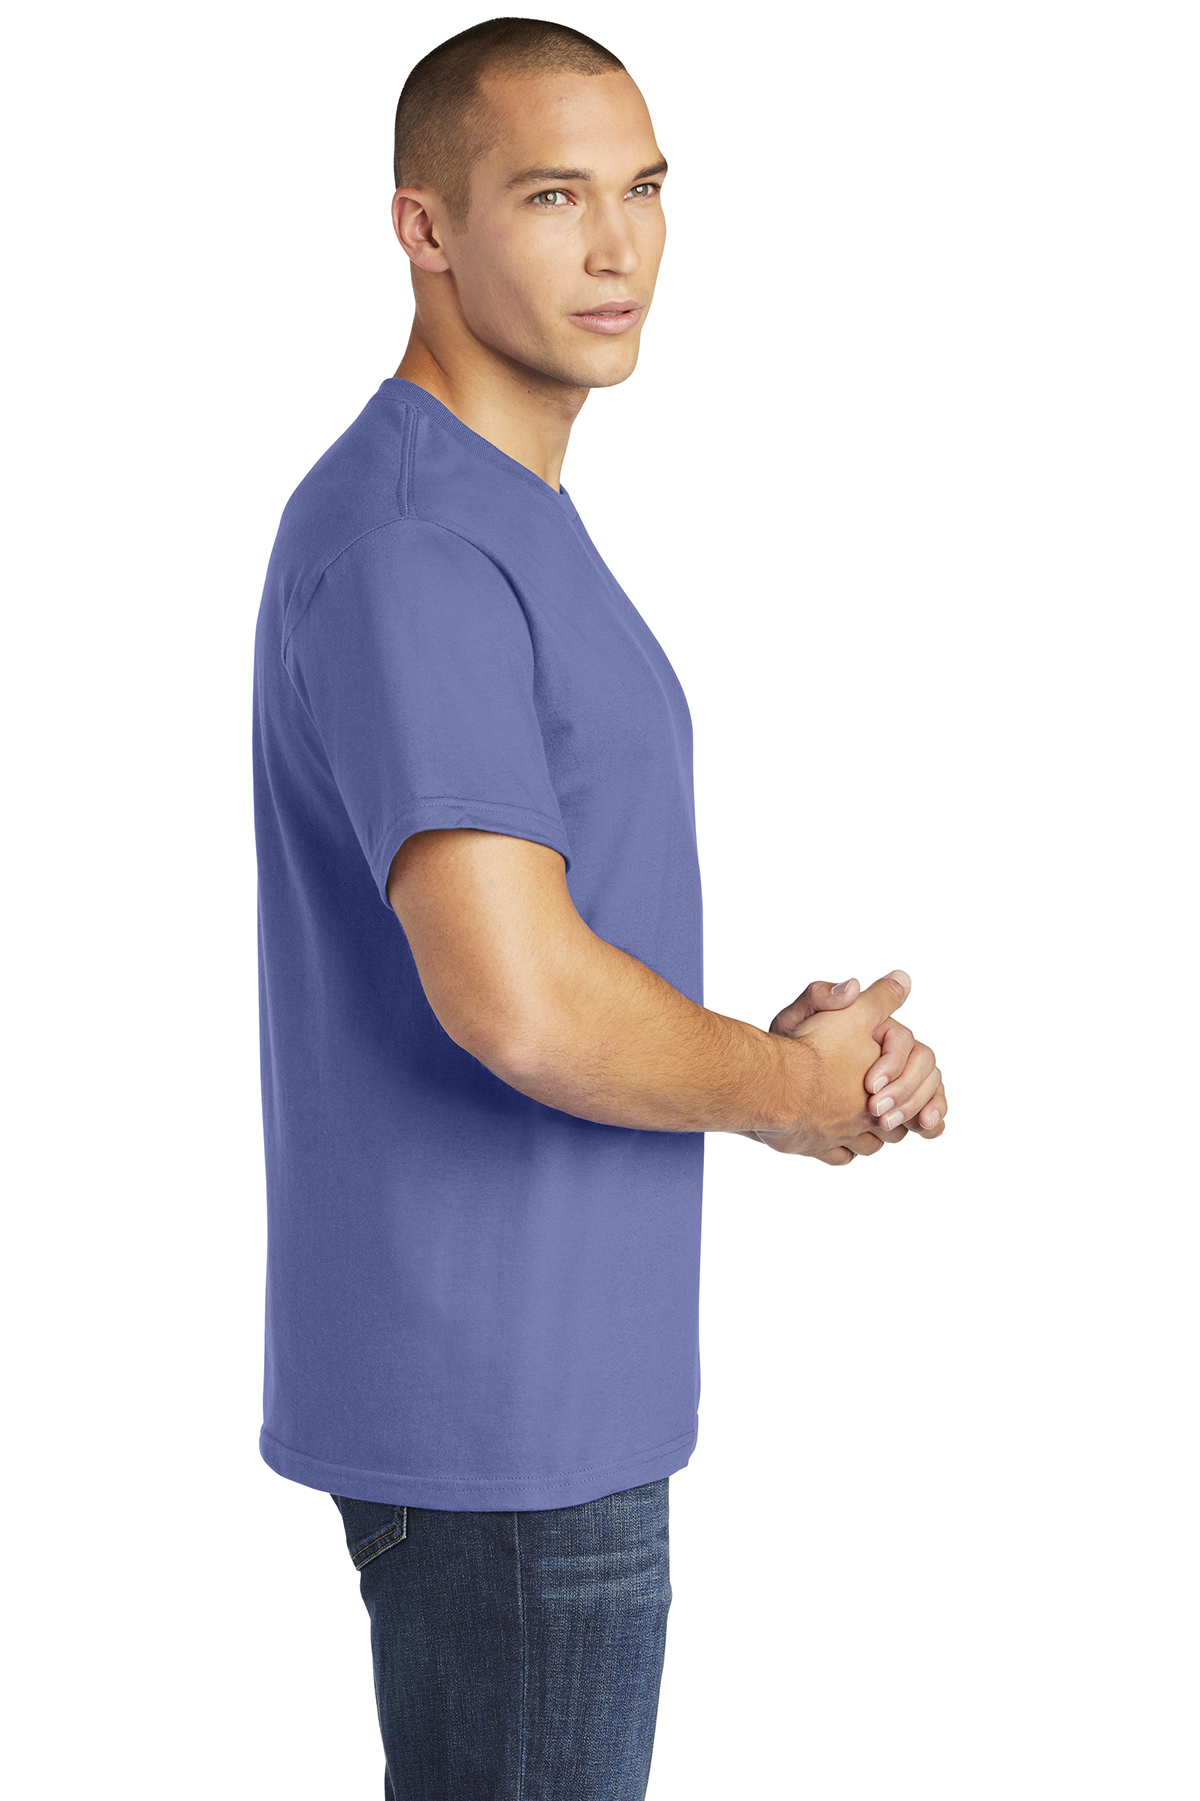 Casuals | Gildan Company T-Shirt Product | Hammer